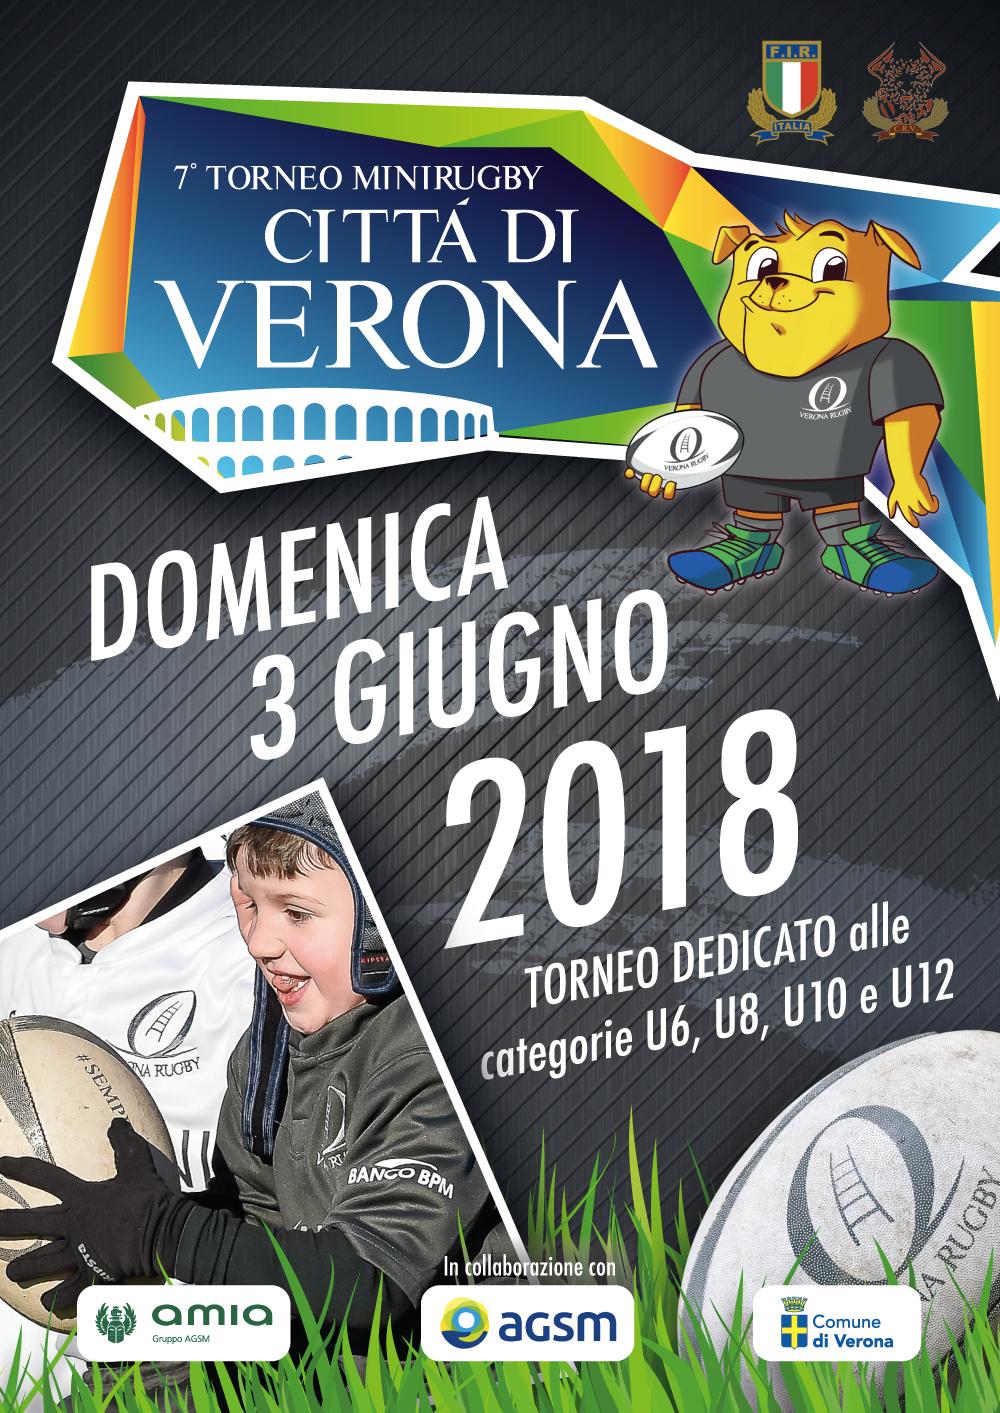 Torneo Citta di Verona 2018 nuova mascotte